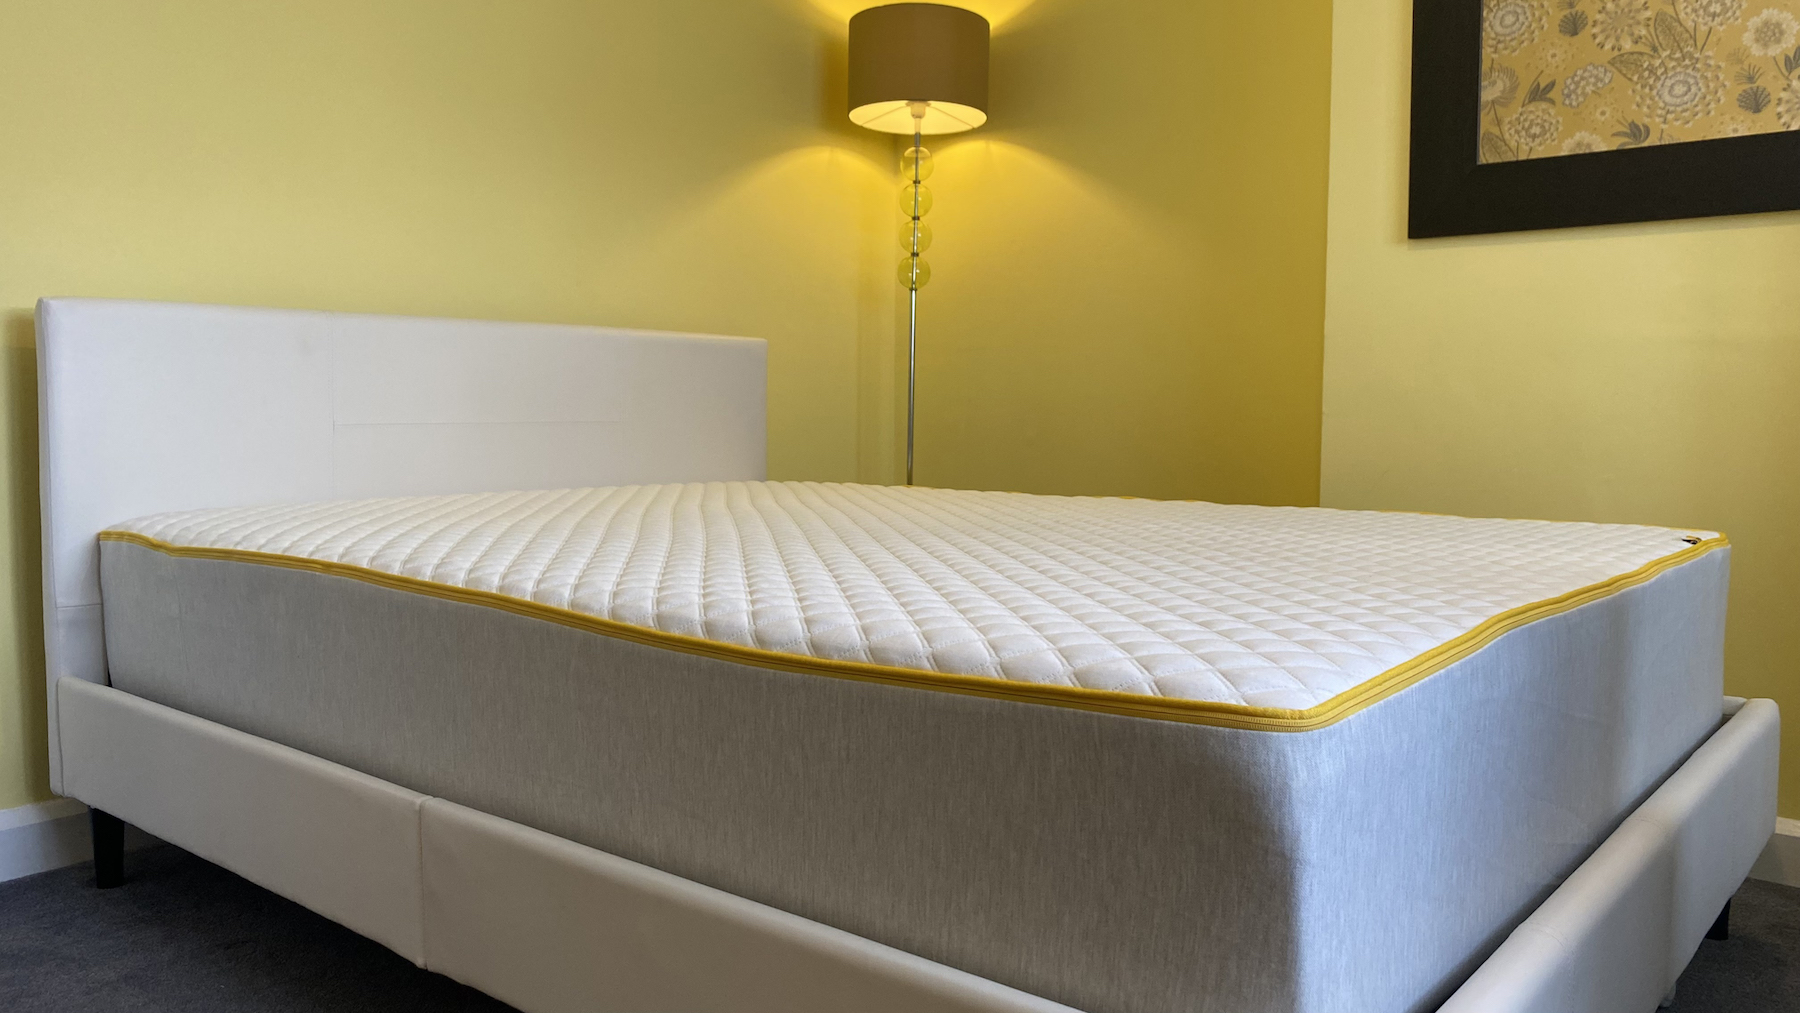 На изображении показан матрас Eve Premium Hybrid на белом каркасе кровати из искусственной кожи.